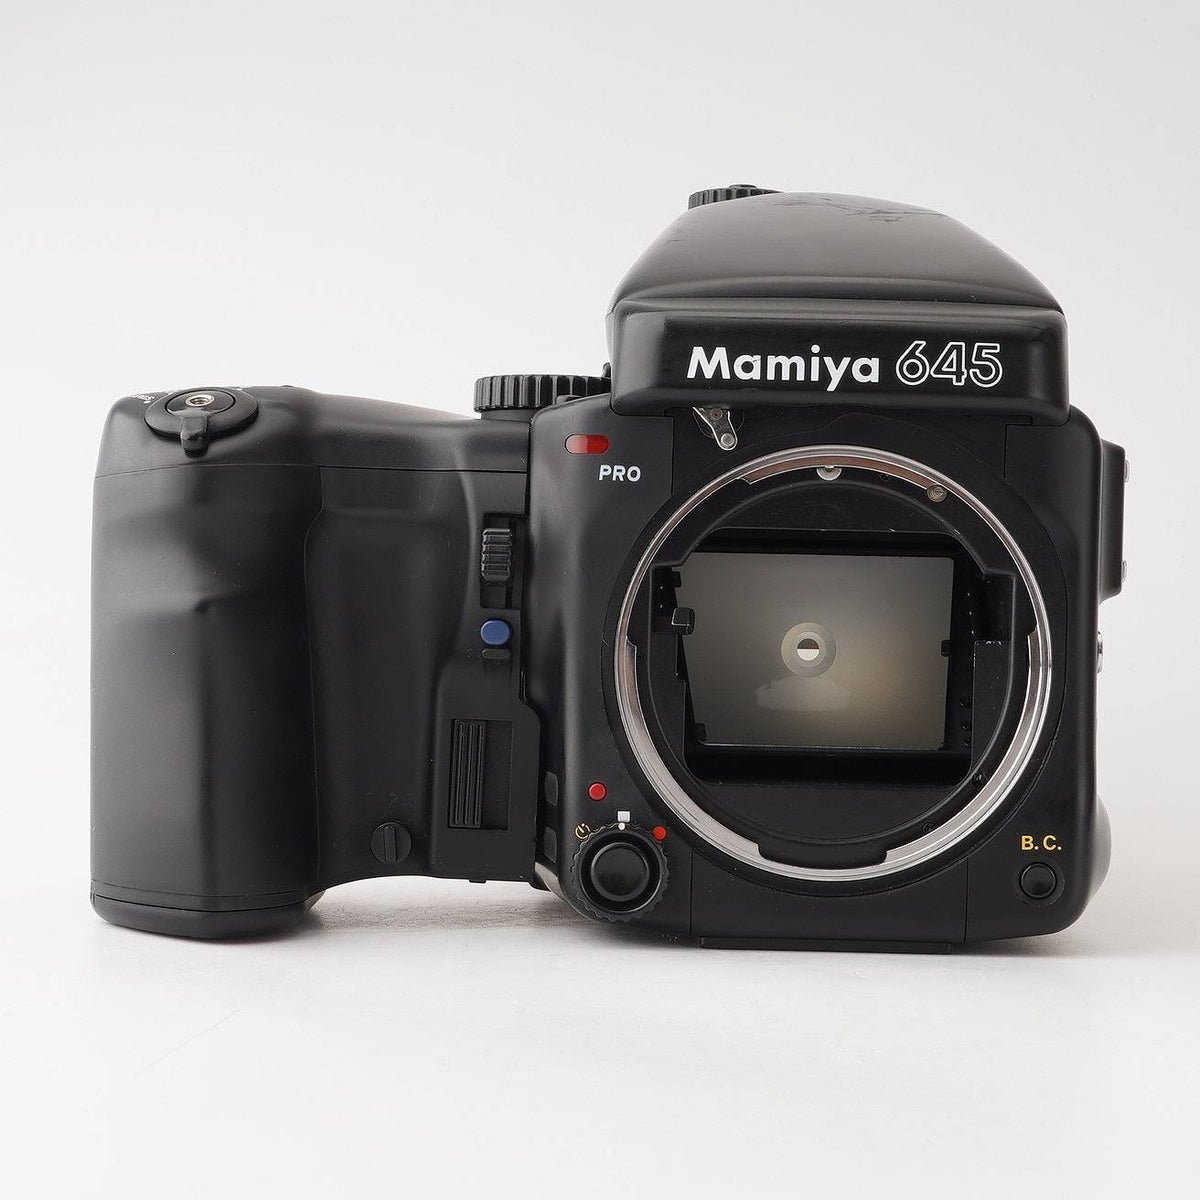 マミヤ Mamiya 645 Pro / ワインダー 中判フィルムカメラ